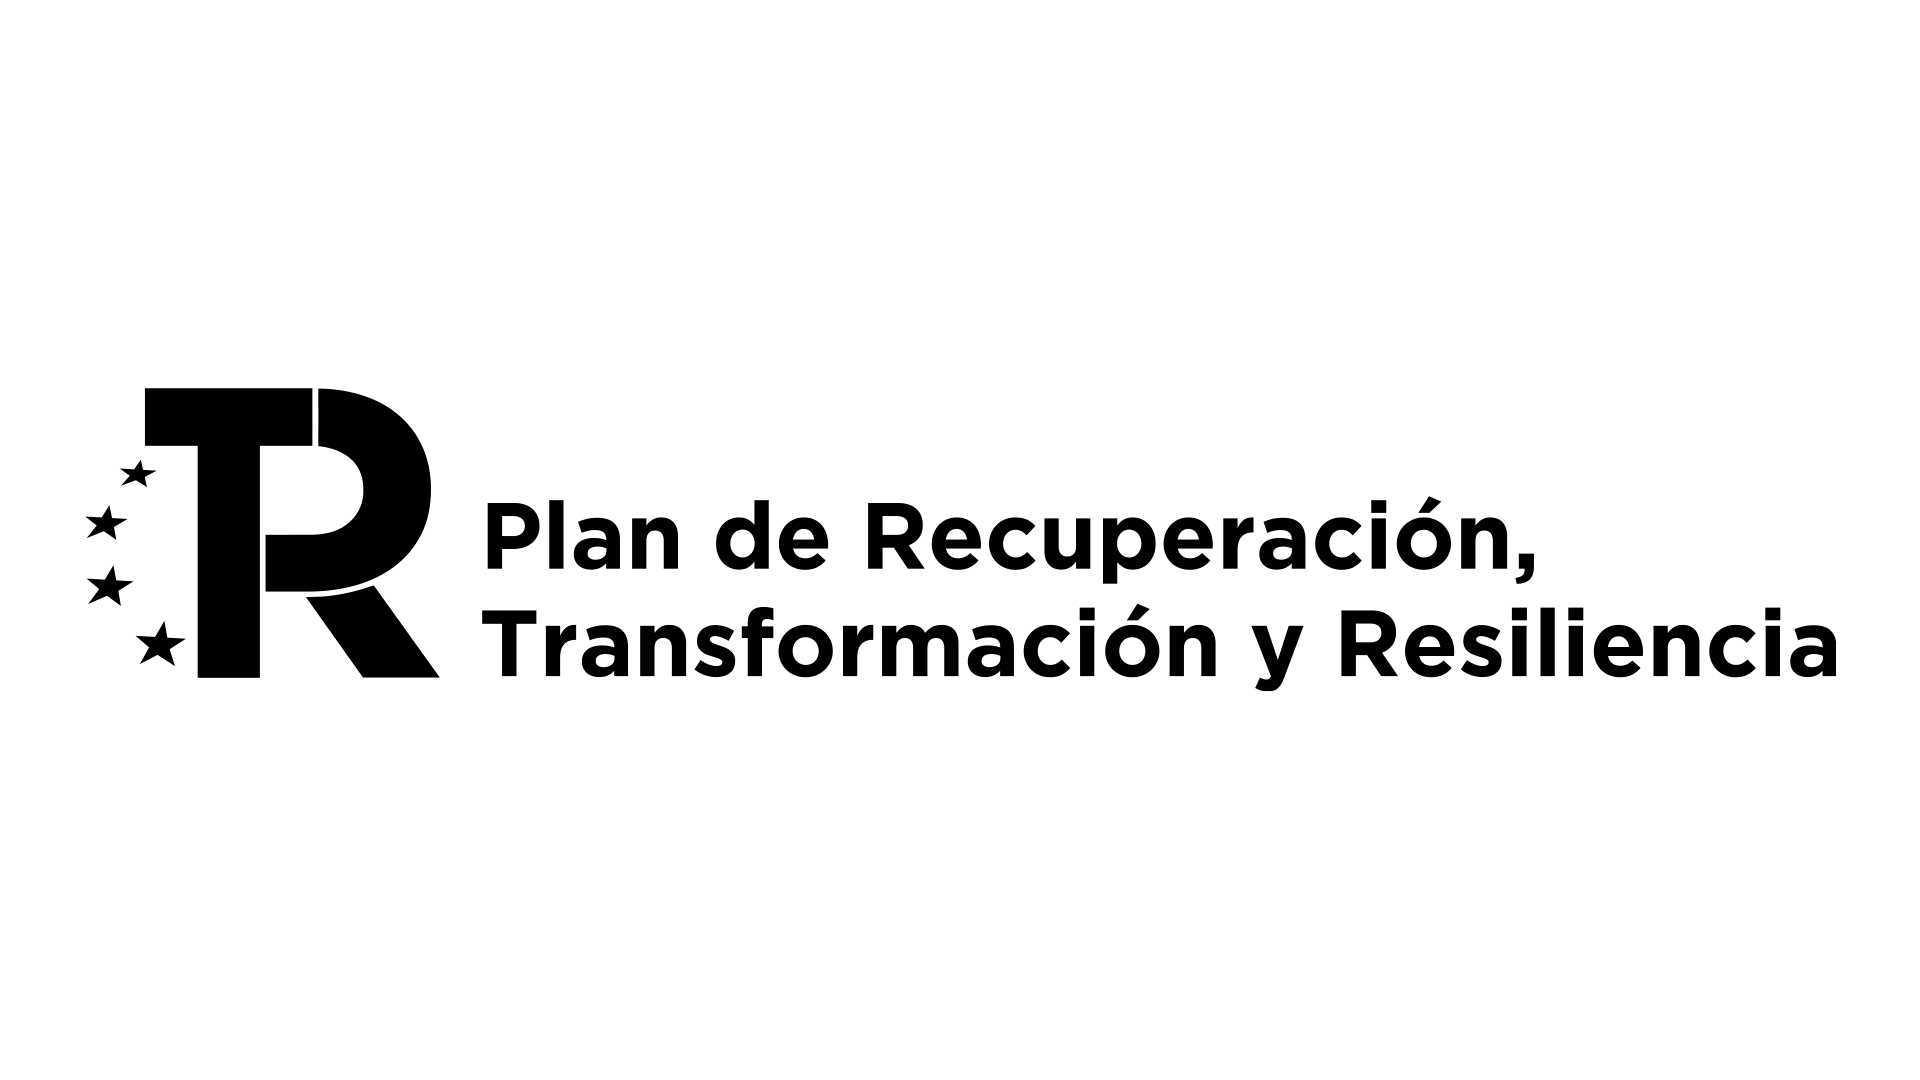 Plan de Recuperación, Trasnformación y Resiliencia